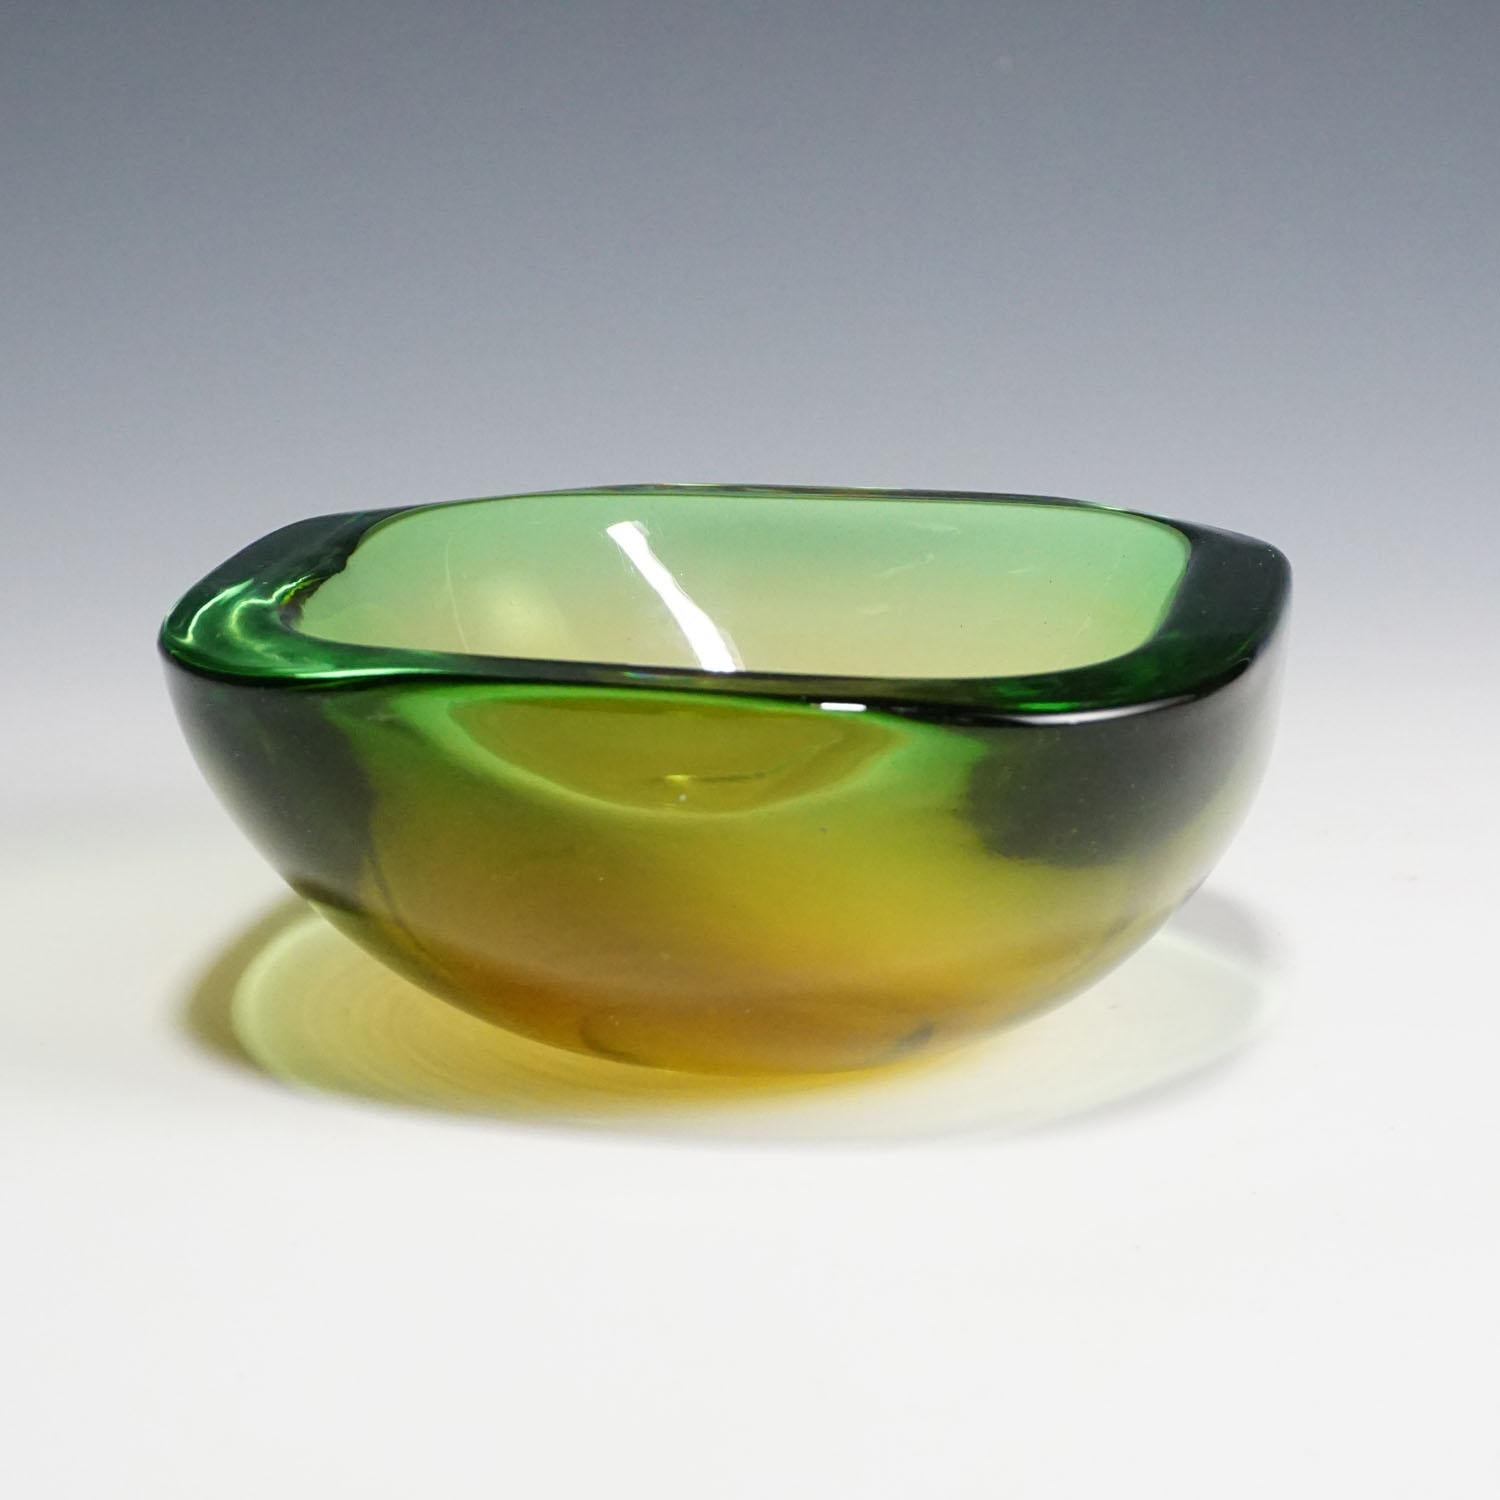 Eine schwere Sommerso-Glasschale, die der Vetreria Gino Cenedese um 1960 zugeschrieben wird. Eine inspirierende Mischung aus gelbem, grünem und klarem Glas.
Maßnahmen:
Breite: 14,5 cm (5,71